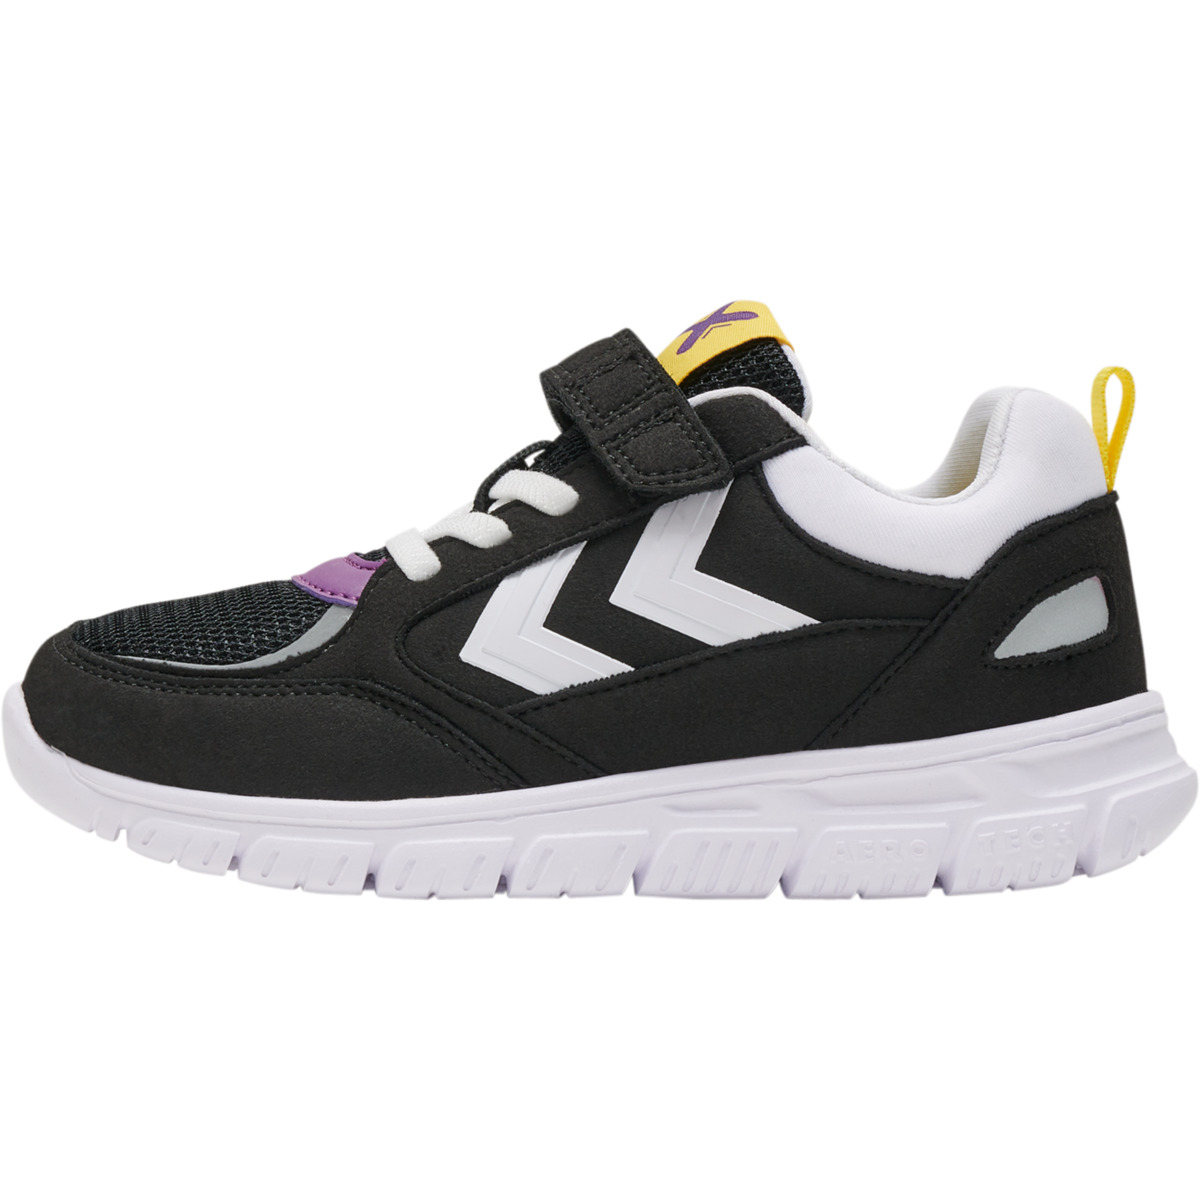 X-Light 2.0 Jr. Sneakers